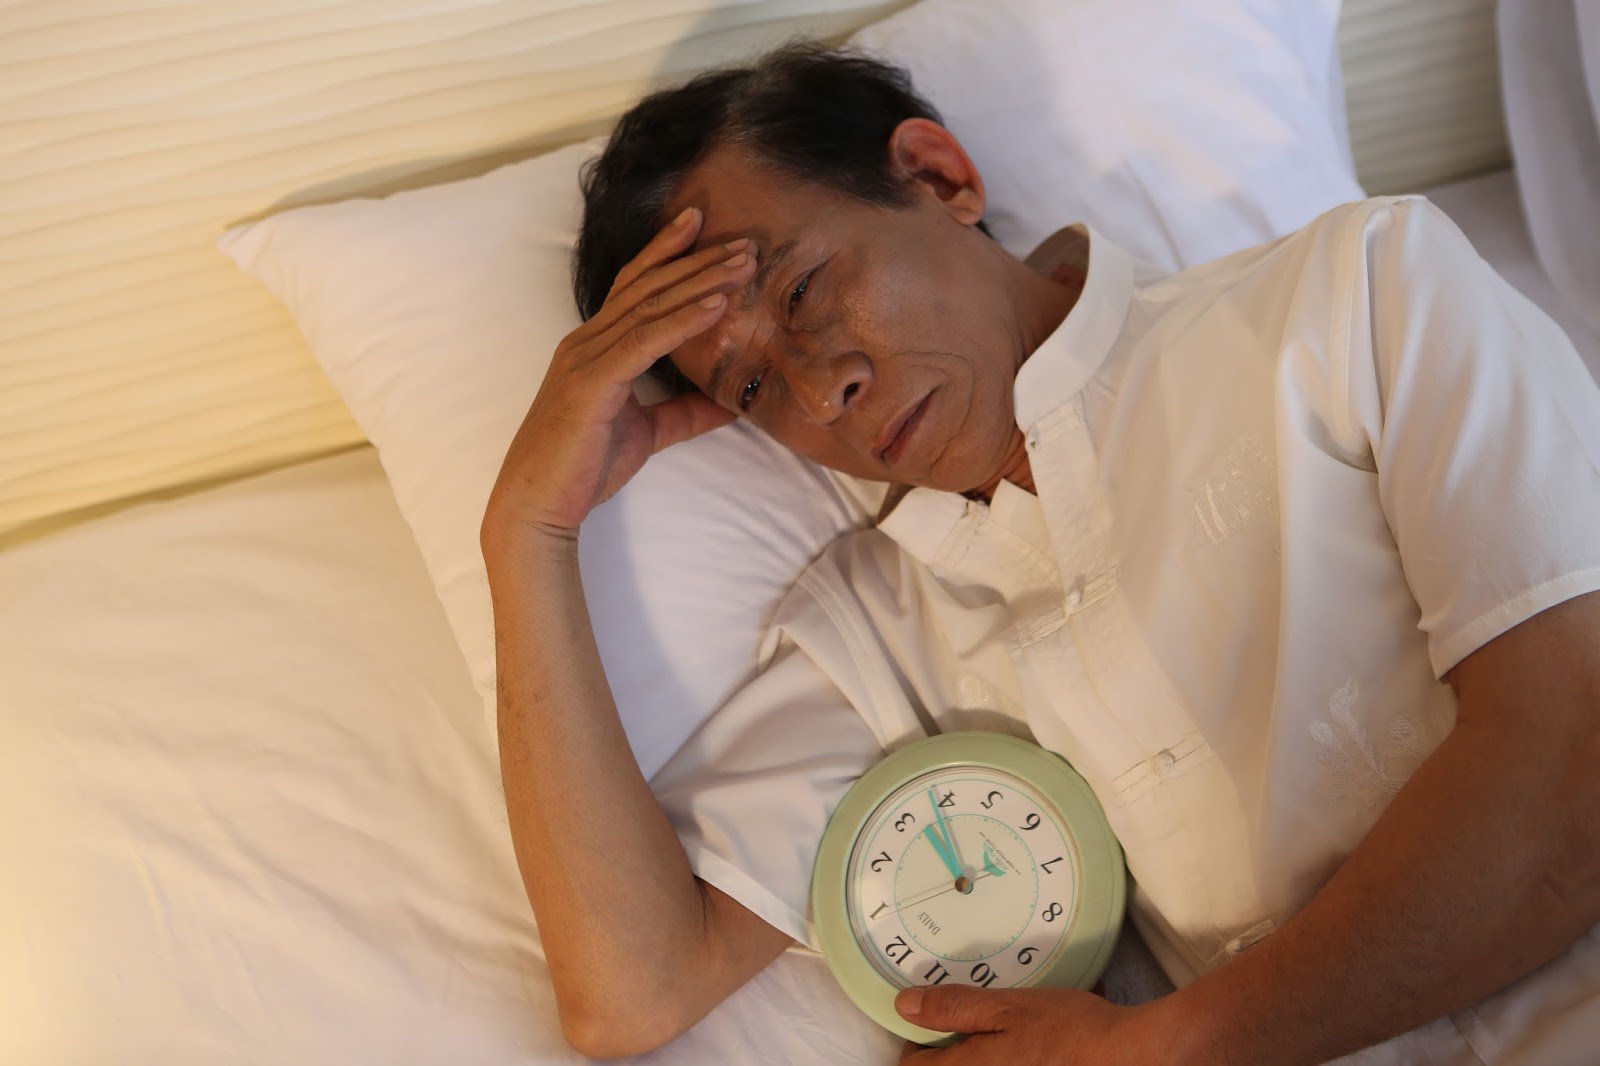 Chất lượng giấc ngủ không đảm bảo dẫn đến nhiều hệ lụy về sức khỏe thể chất và tinh thần.